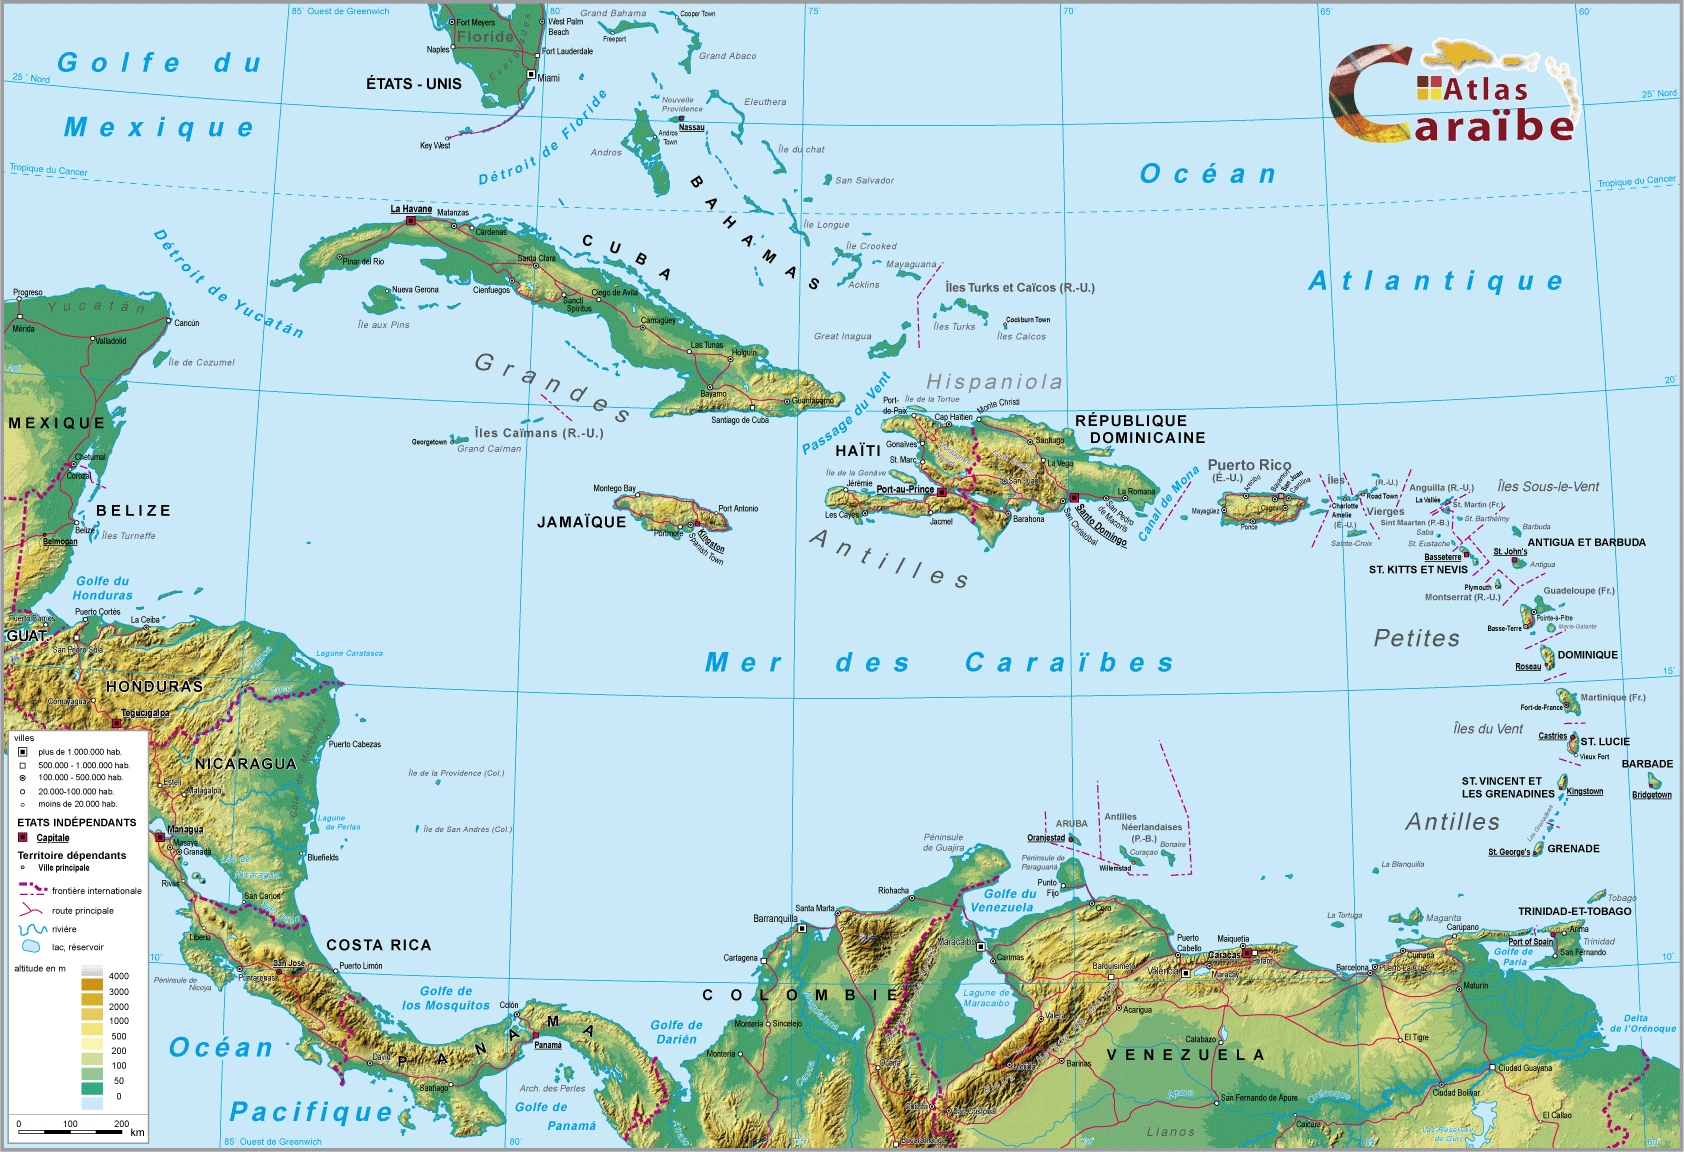 Carte de la Caraïbe. Source : http://atlas-caraibe.certic.unicaen.fr/fr/